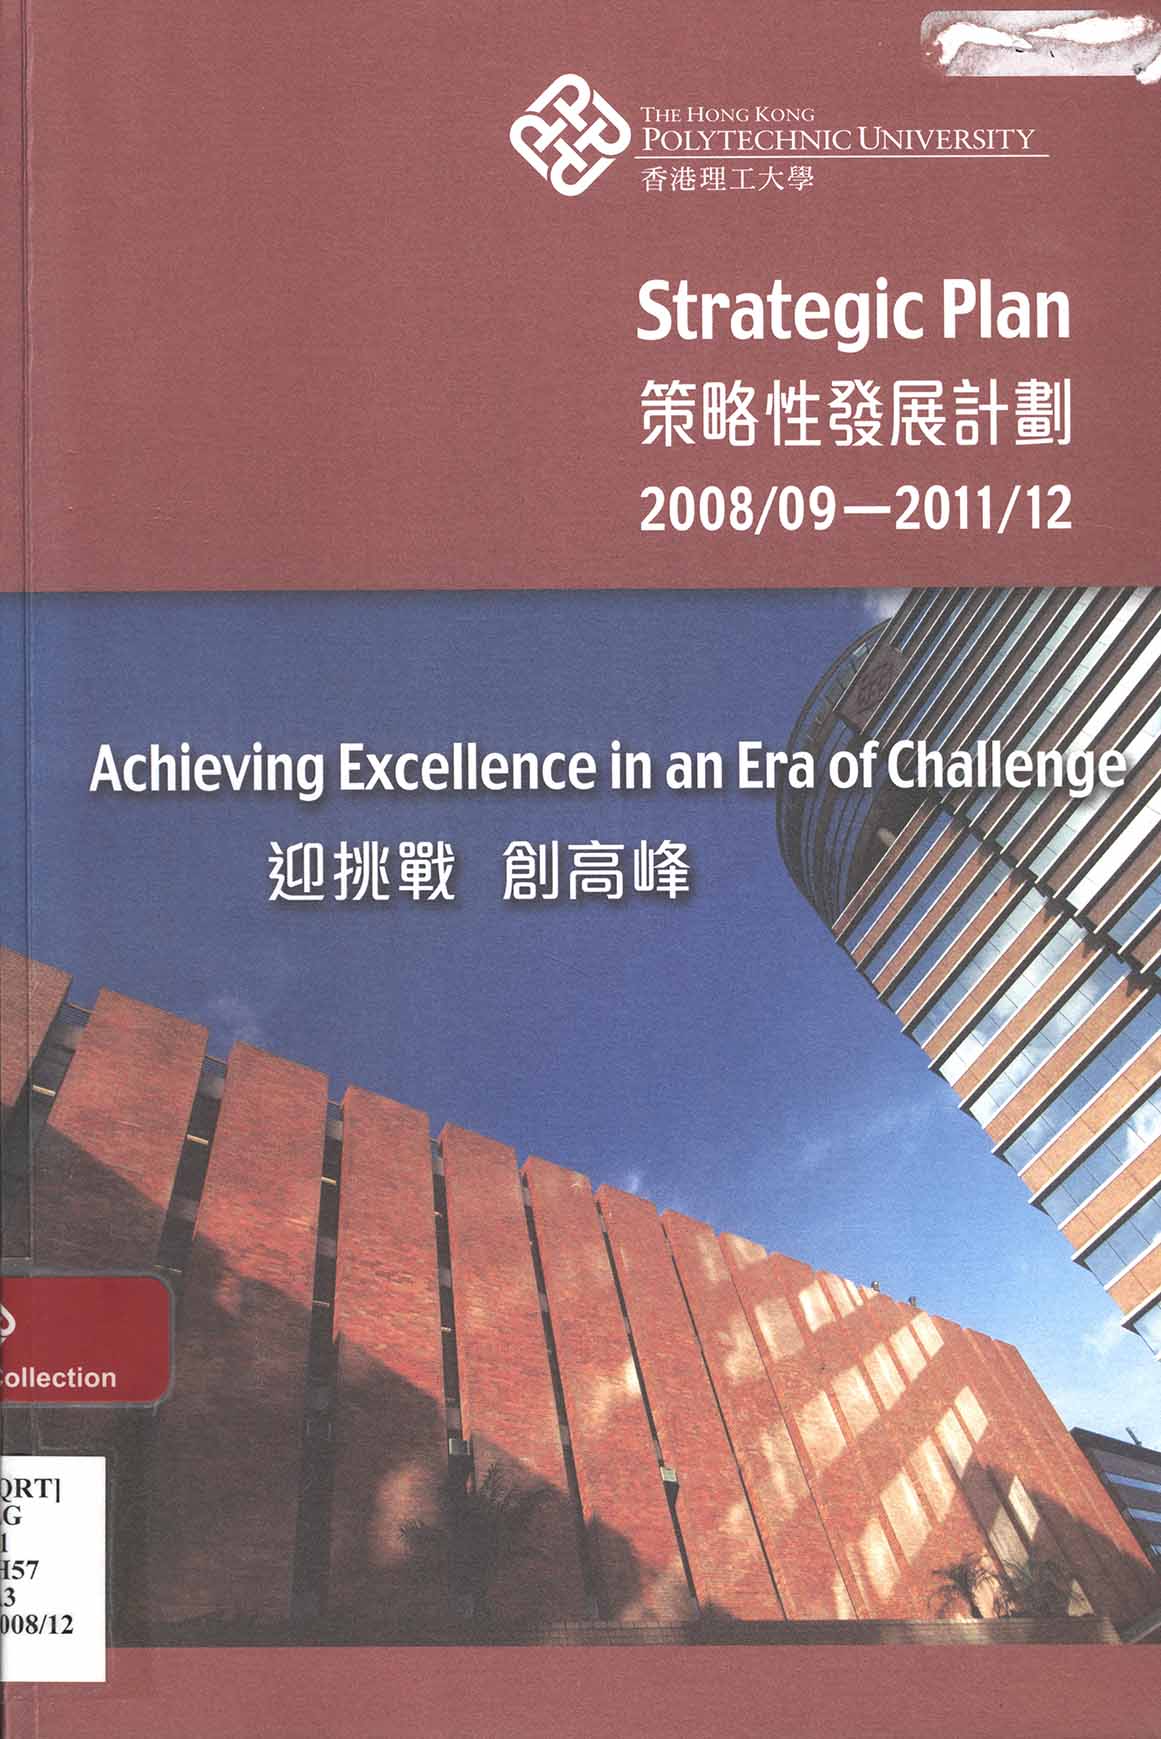 The Hong Kong Polytechnic University strategic plan for 2008/09-2011/12